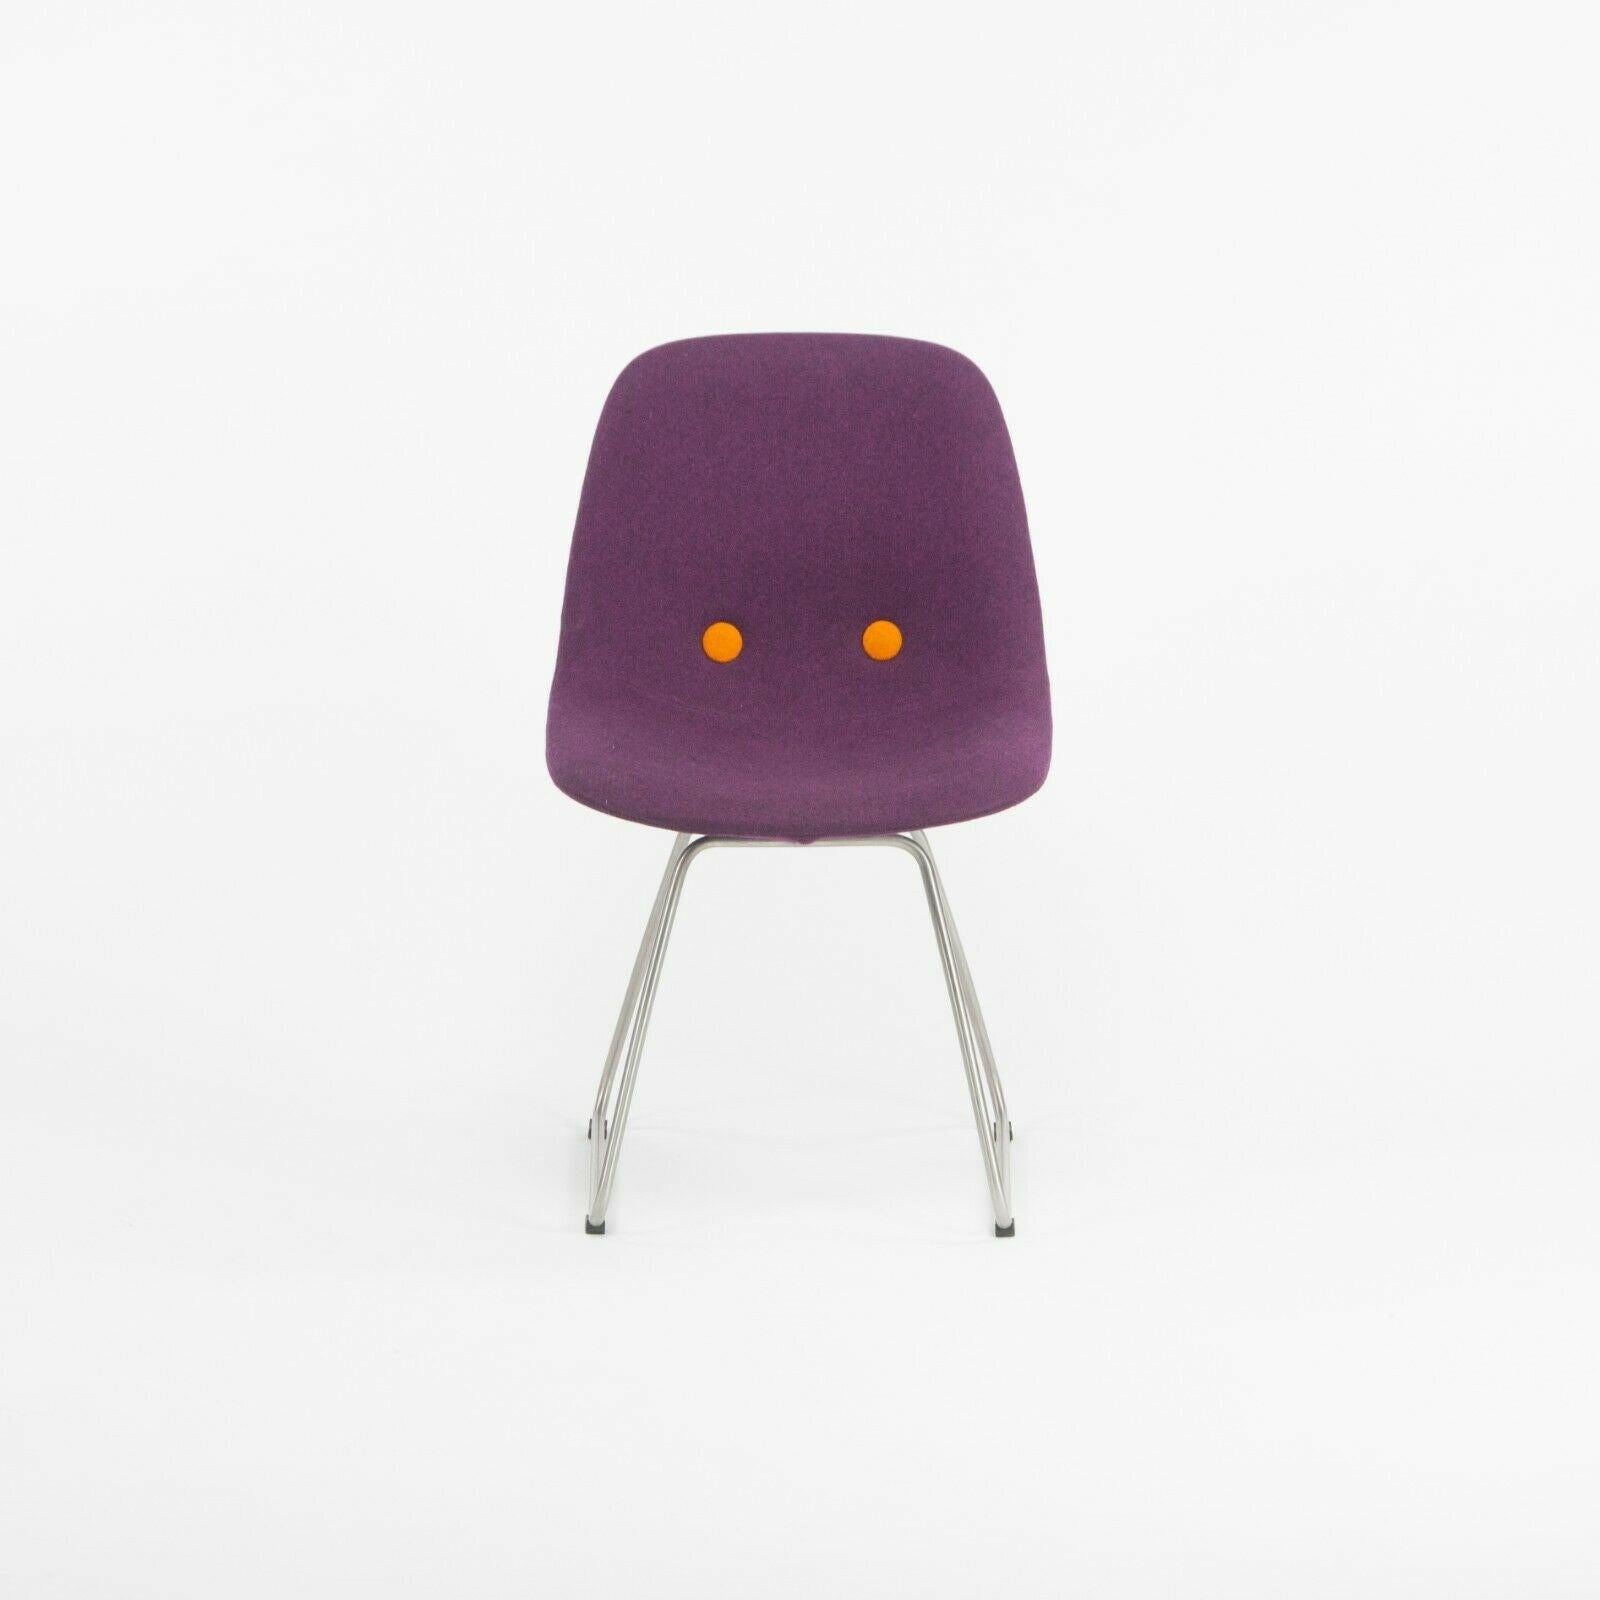 Nous proposons à la vente un ensemble de six chaises Erik Jorgensen EJ 2 Eyes Chair de Foersom + Hiort-Lorenzen. Ces chaises sont magnifiquement revêtues d'un tissu de laine violet de Kvadrat avec des boutons orange contrastés. Les chaises semblent